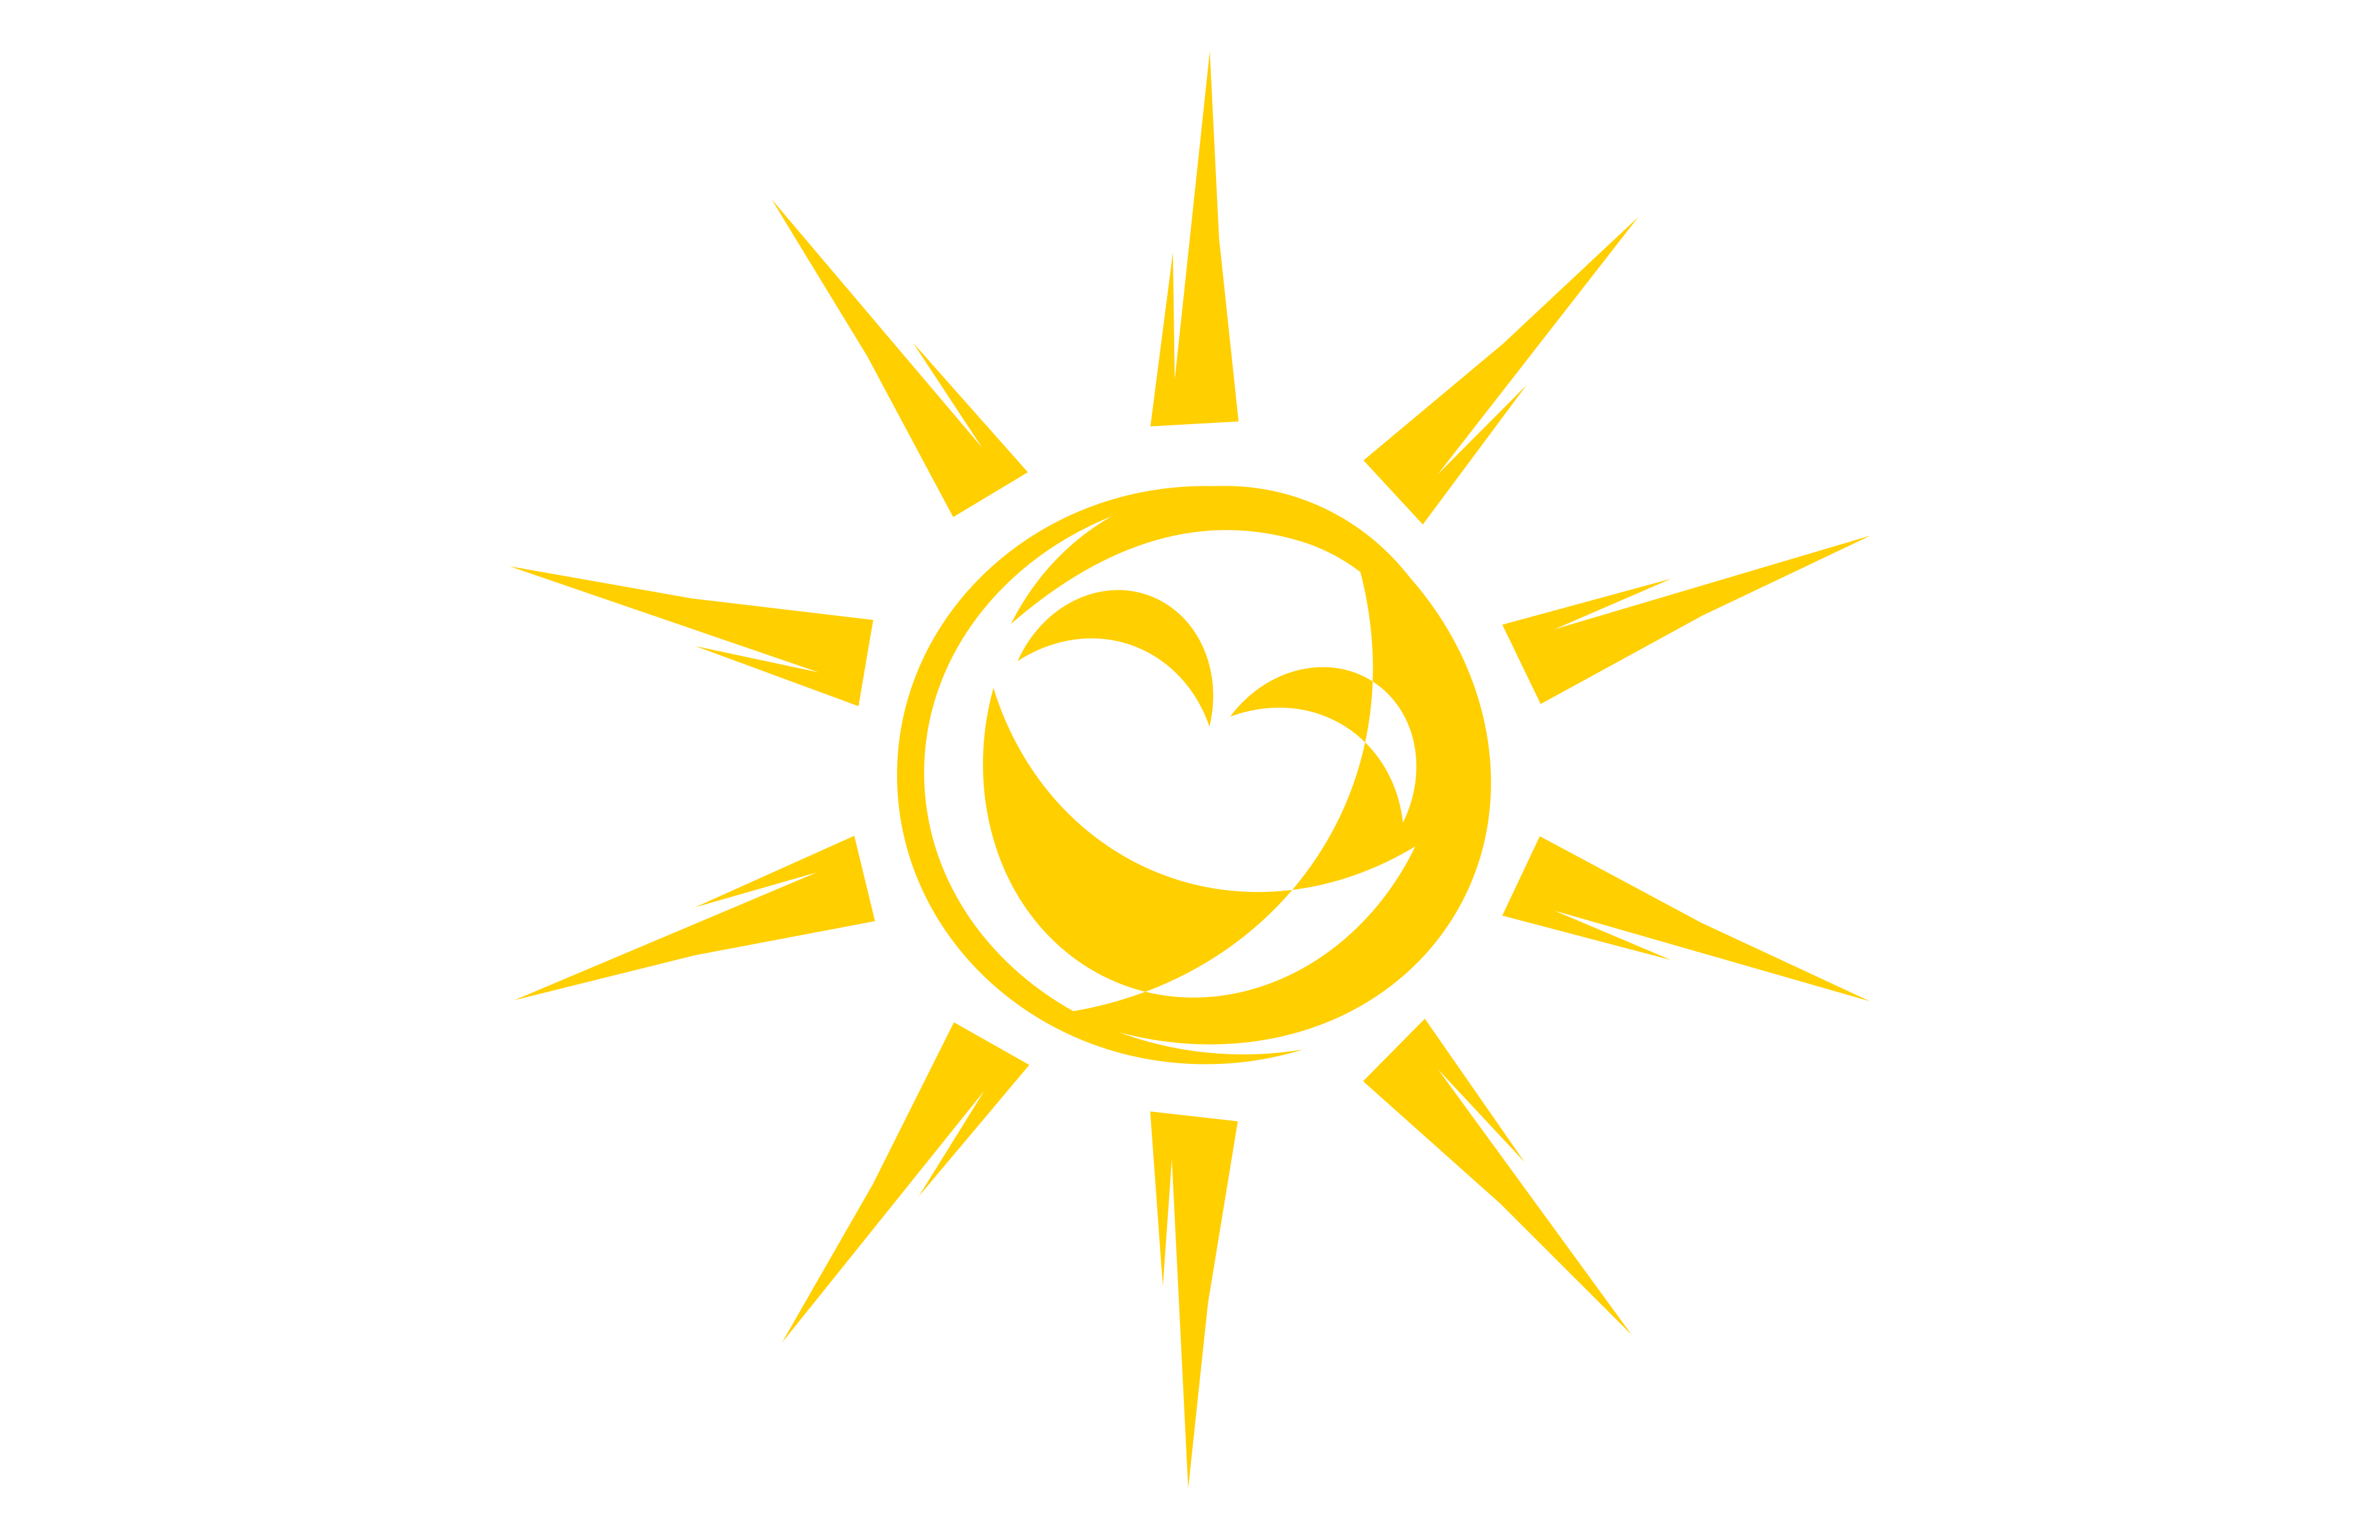 Smiley Sun Clipart